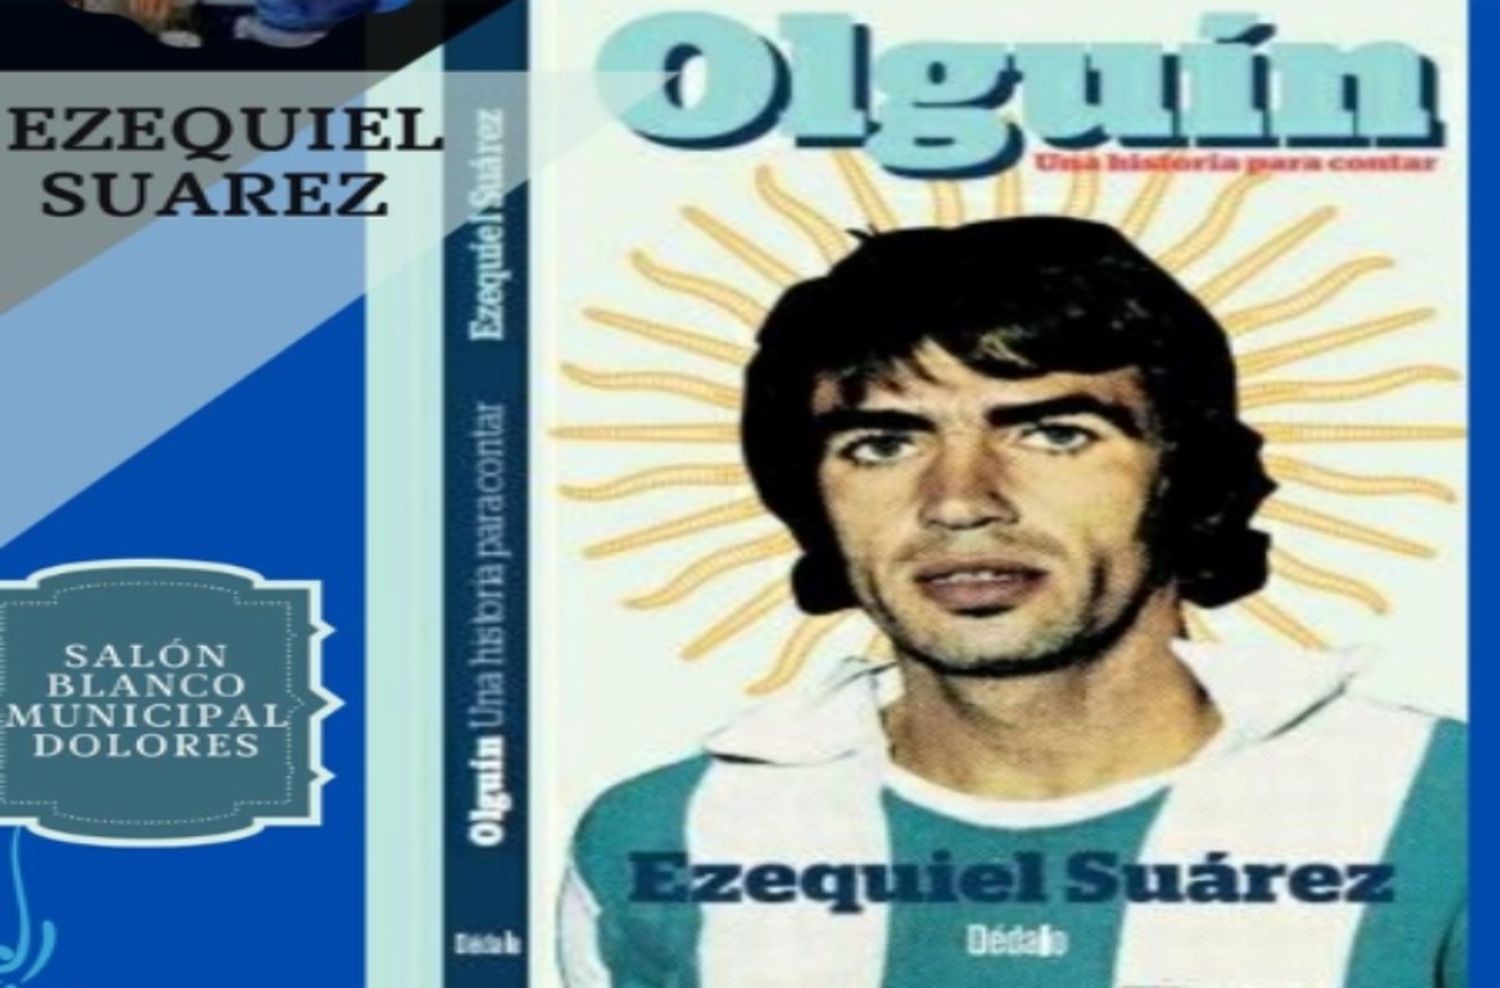 El jugador formado en Alvarado y mundialista, Jorge Olguín lanzó su libro